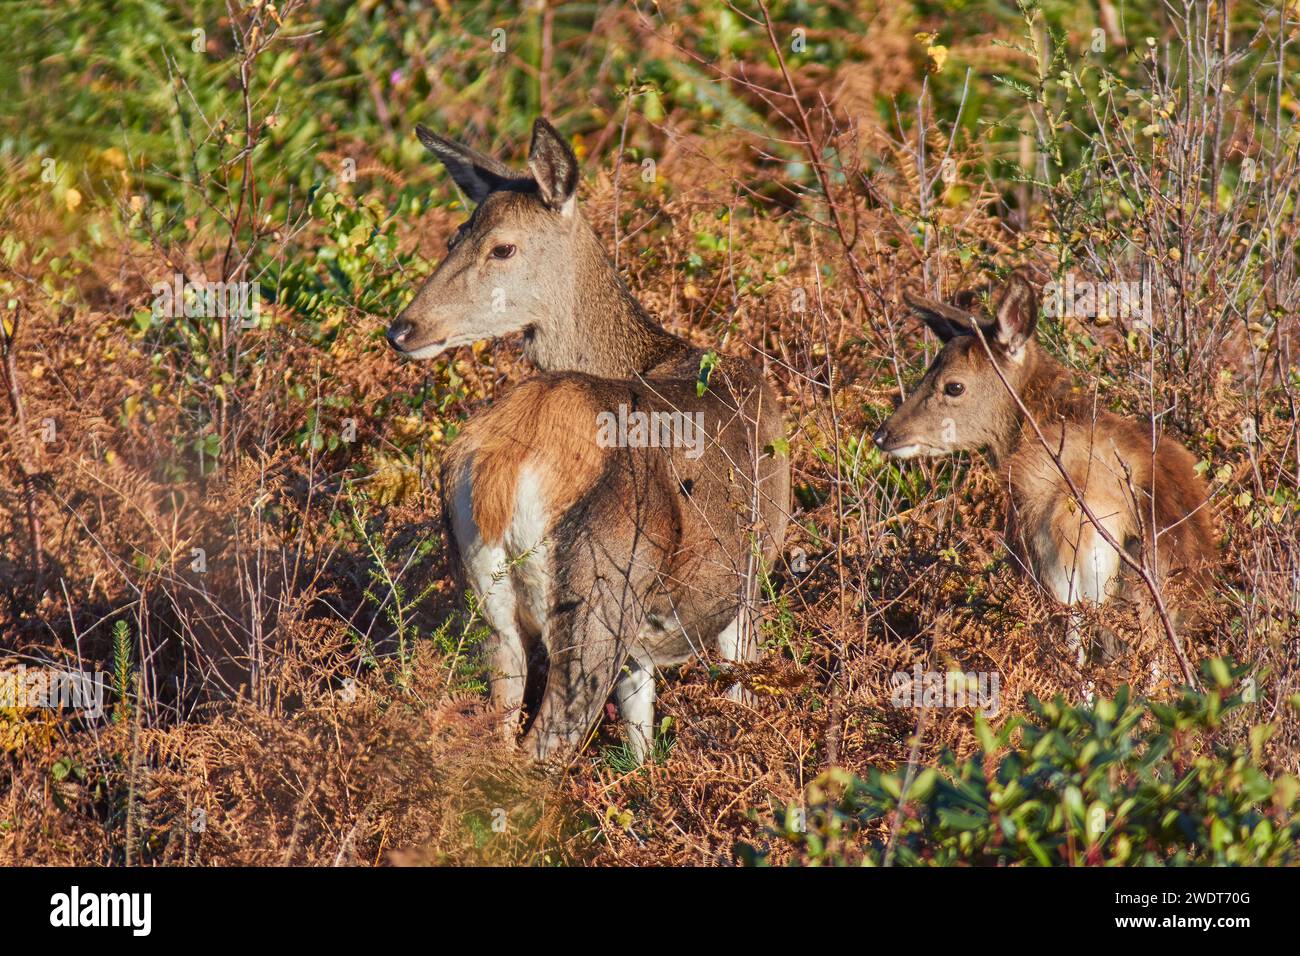 Un groupe de cerfs rouges (Cervus elaphus), parmi des fougères dans la campagne d'Exmoor, près de Dunster, parc national d'Exmoor, Somerset, Angleterre, Royaume-Uni Banque D'Images